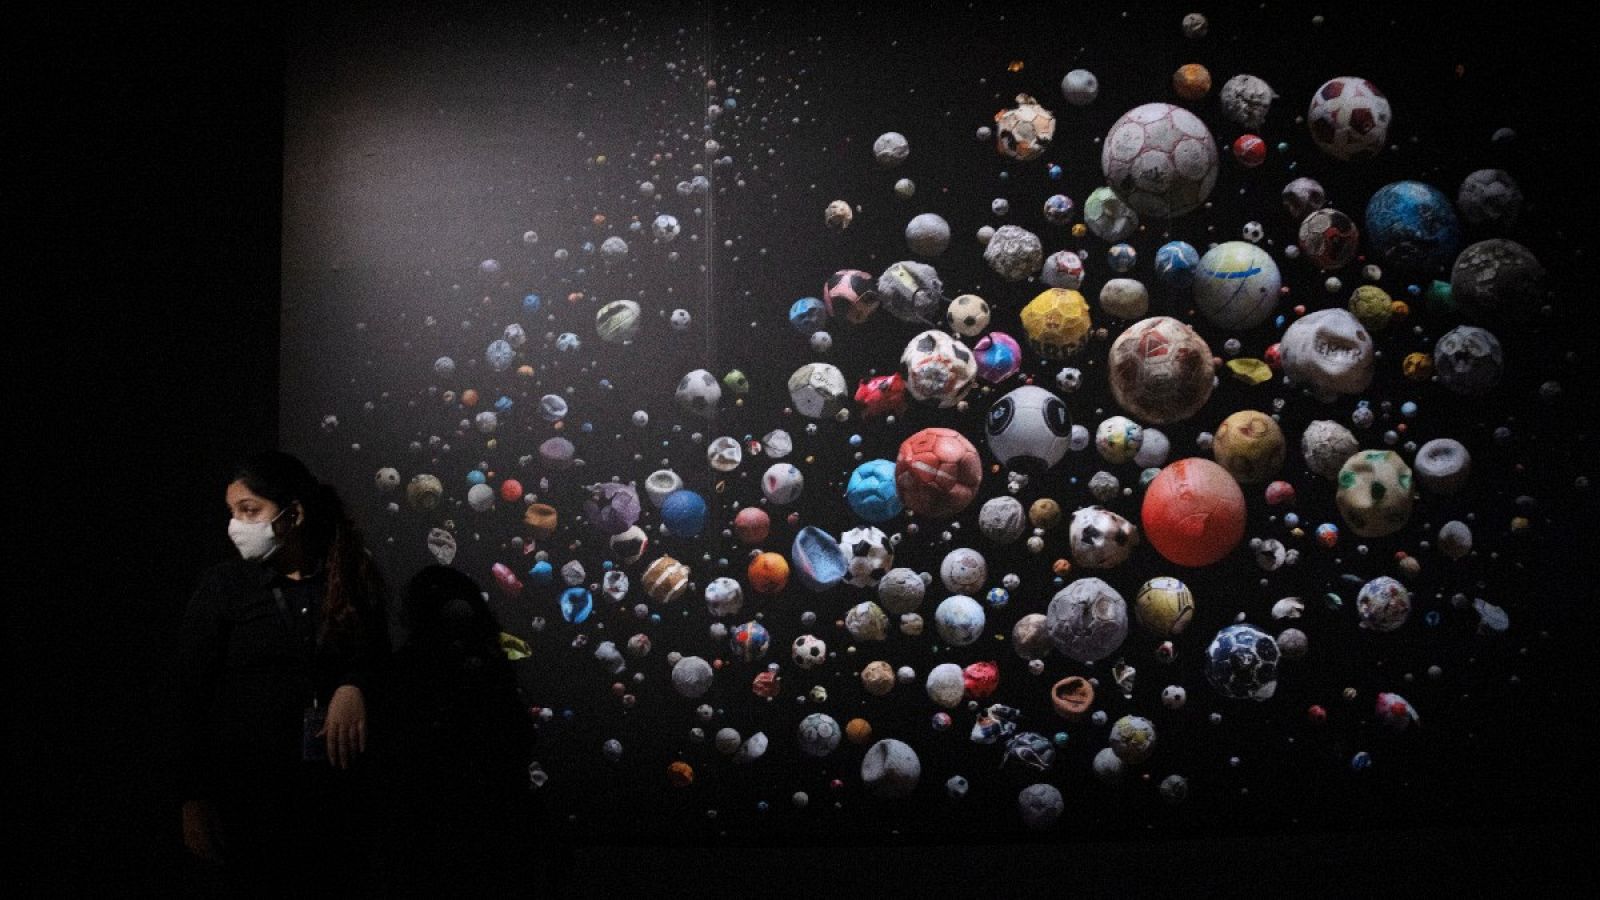 Barker utilizó balones recogidos de playas internacionales para realizar esta fotografía, expuesta en el ArtScience Museum de Singapur en septiembre de 2020